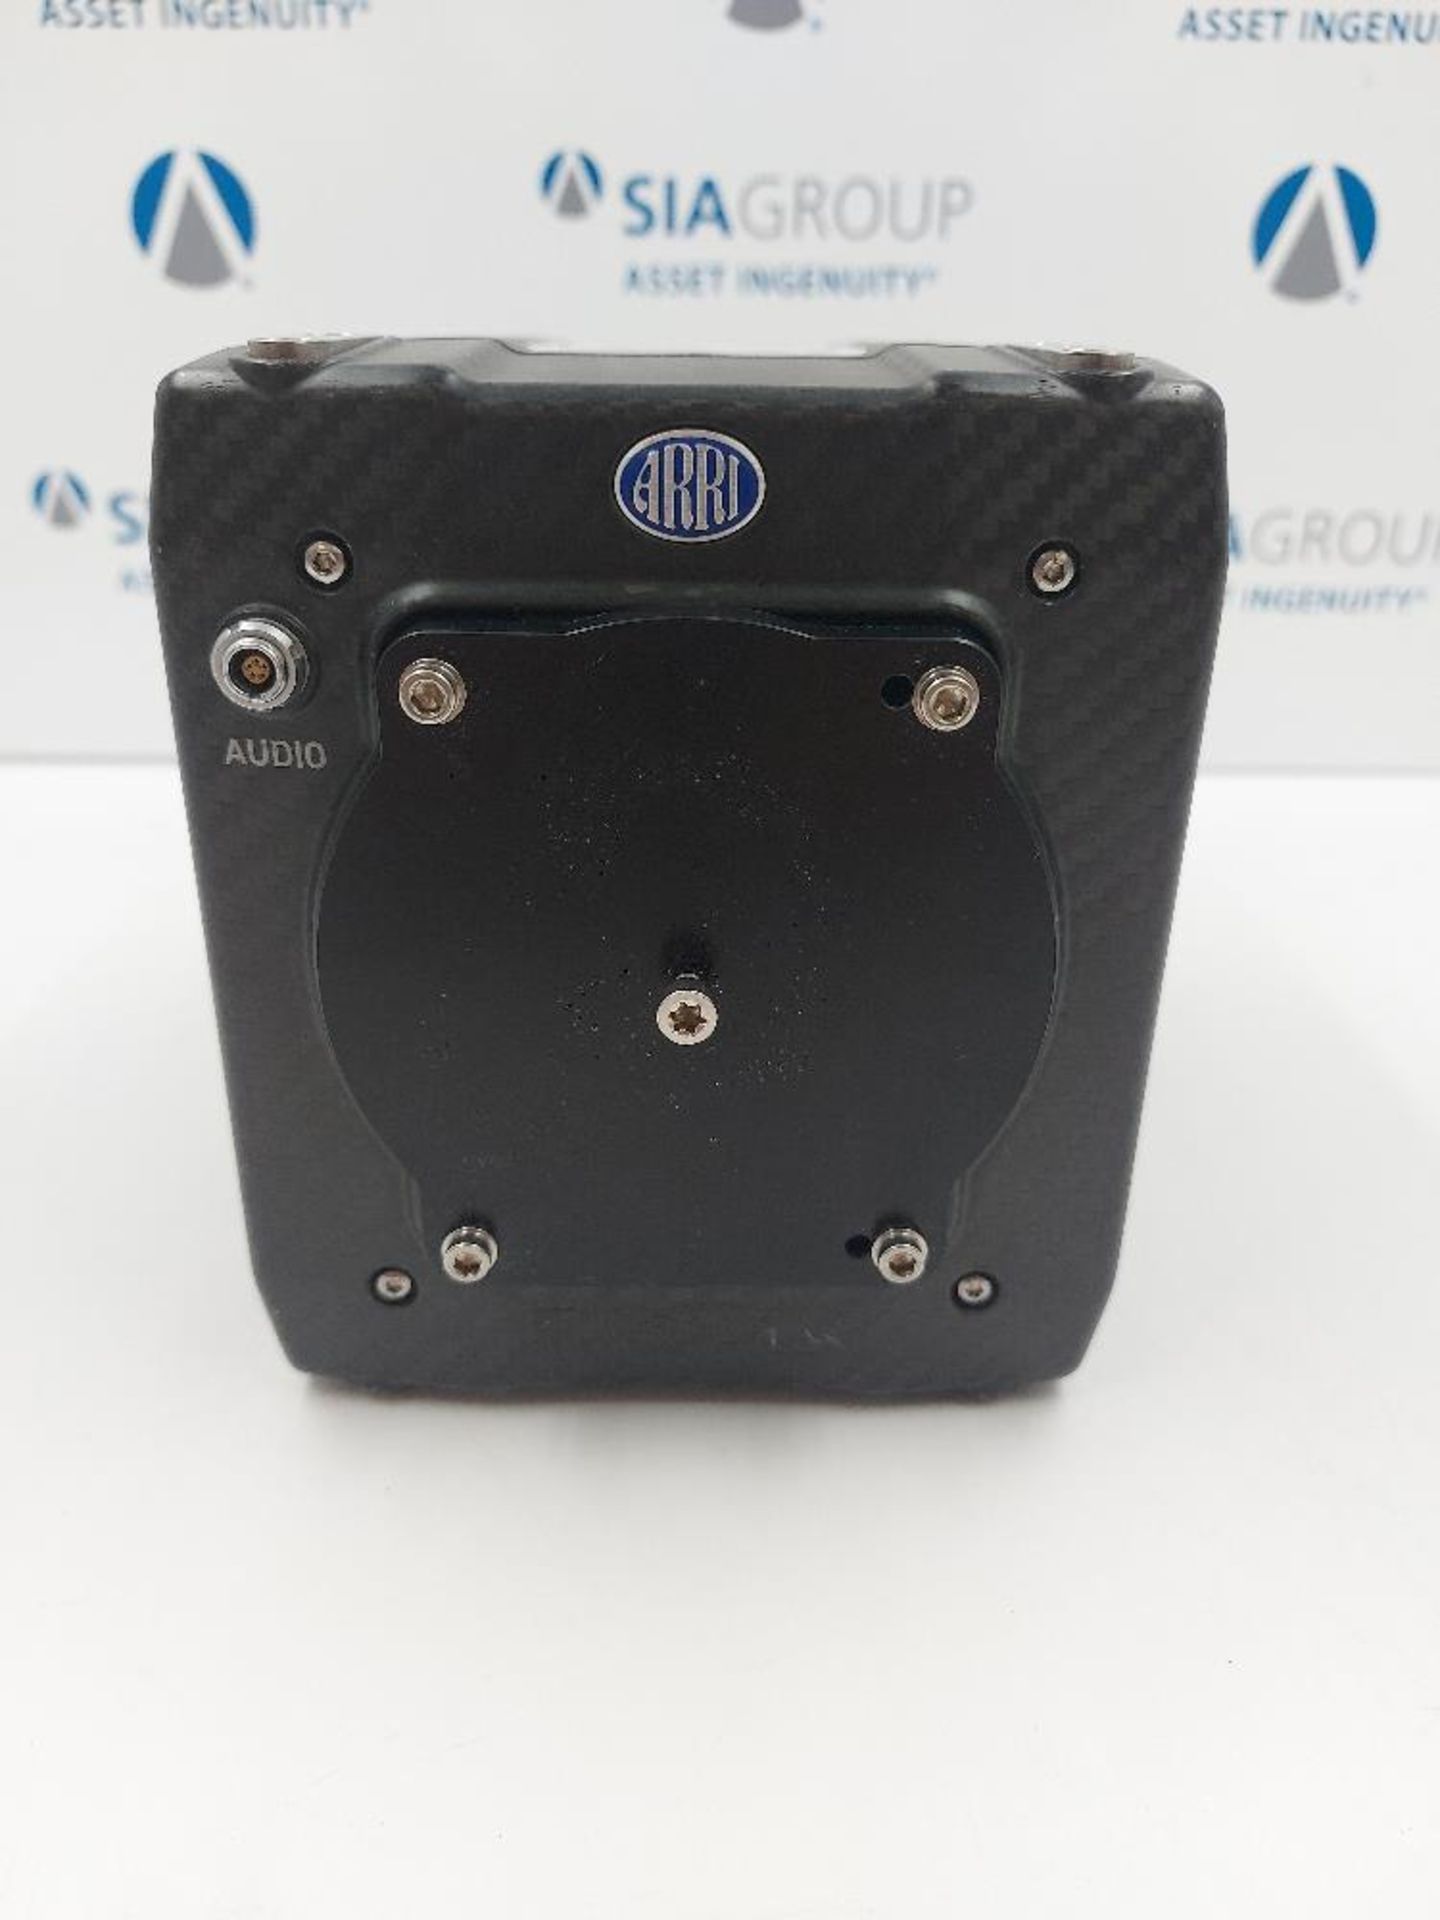 ARRI ALEXA Mini 4.5K Carbon Fibre Camera Body suitable for Spares & Repairs - Image 4 of 6